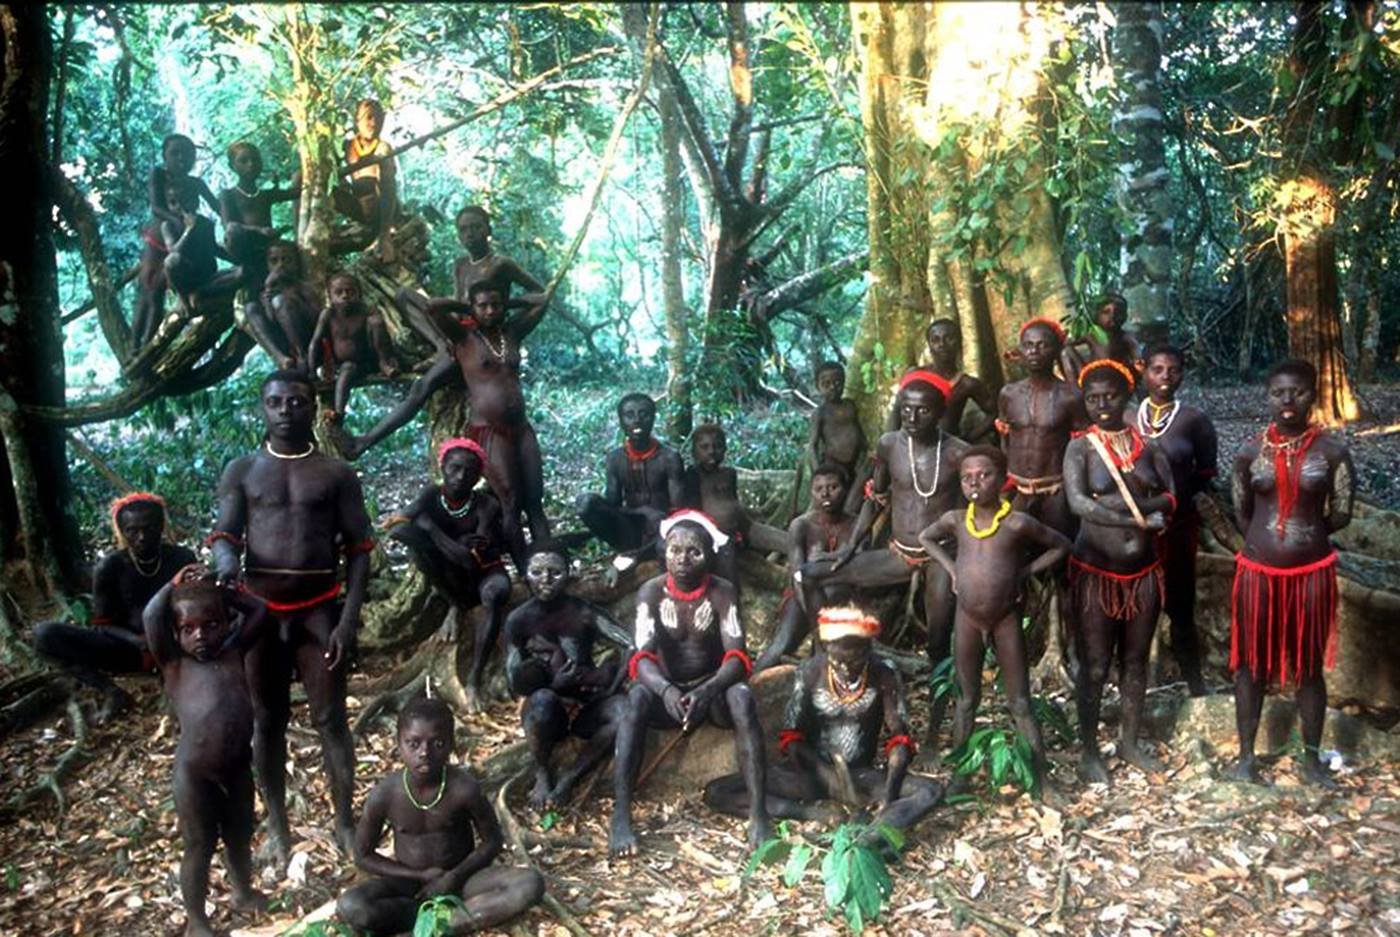 People live on islands. Андаманские острова племя джарава. Северный Сентинельский остров аборигены. Северный Сентинельский остров, Индия. Андаманские острова, Северный Сентинел.